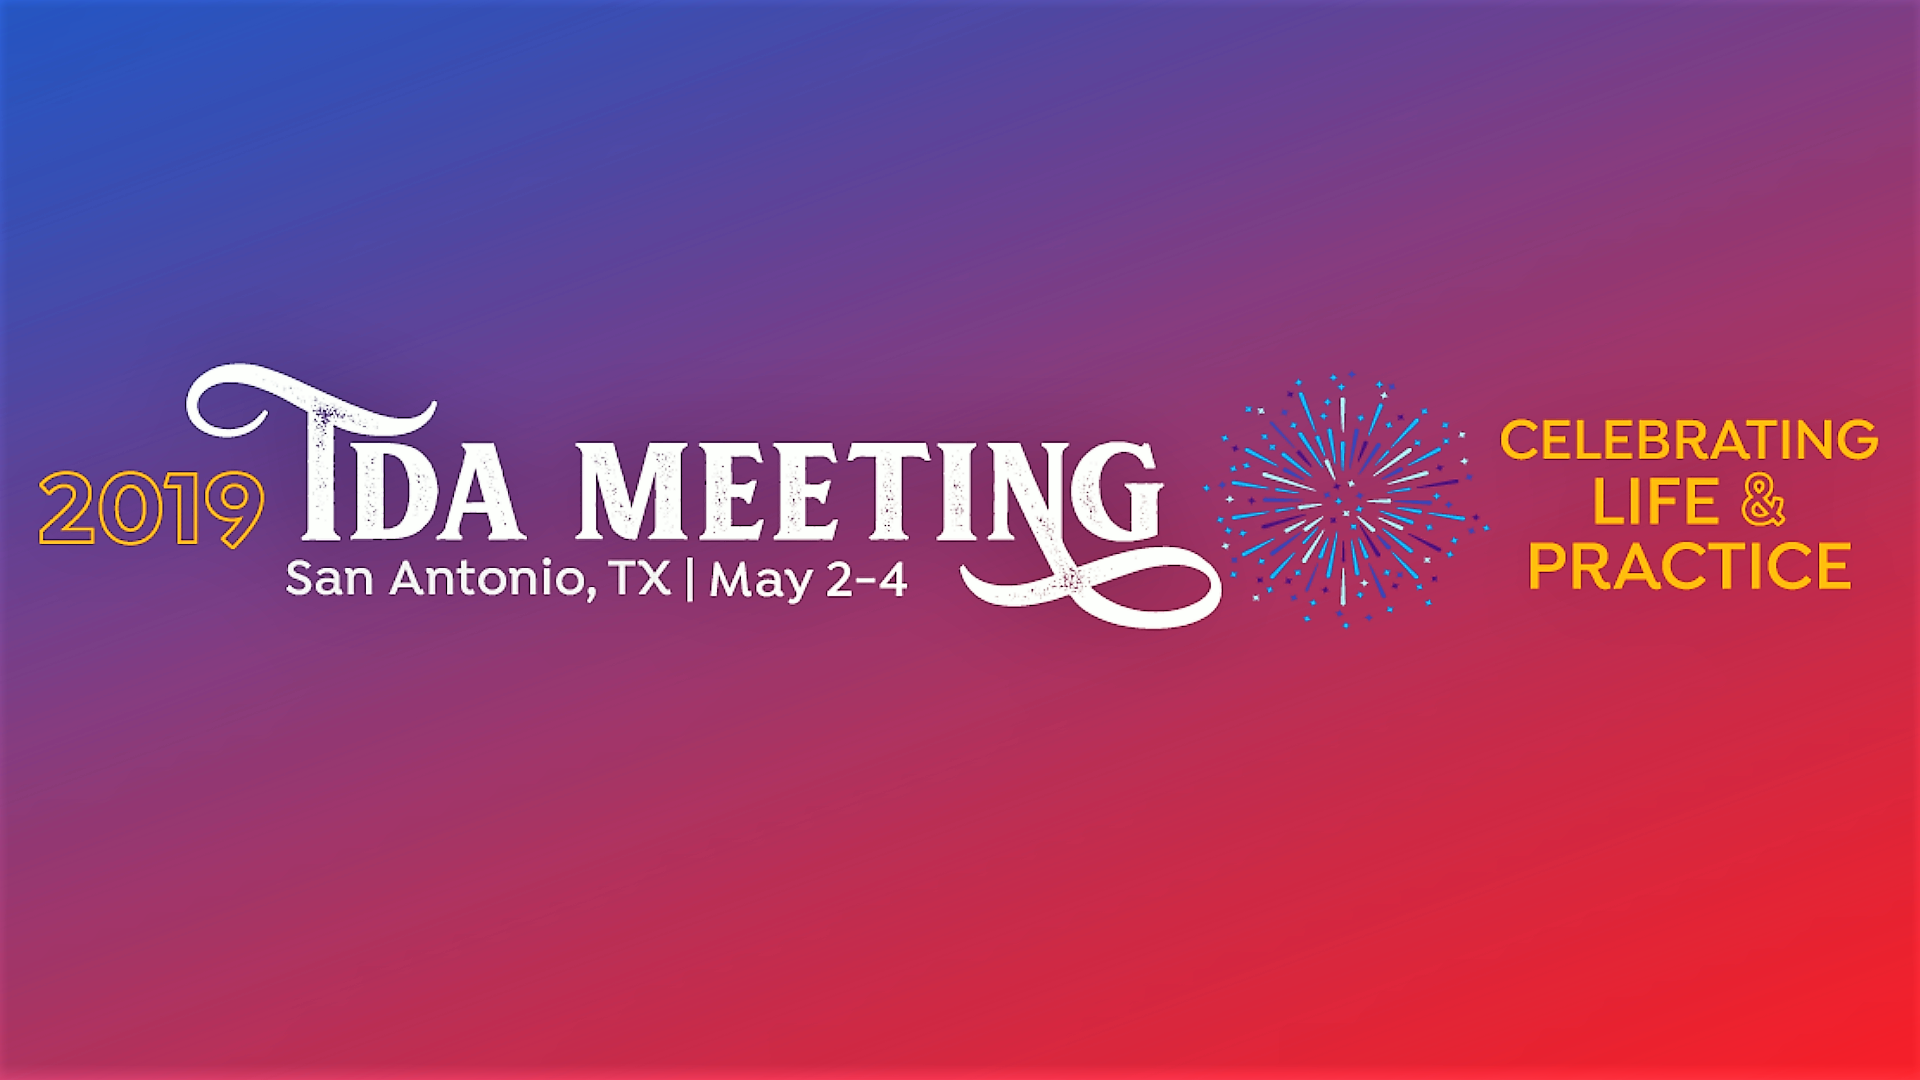 2019 TDA MEETING The TDA Meeting